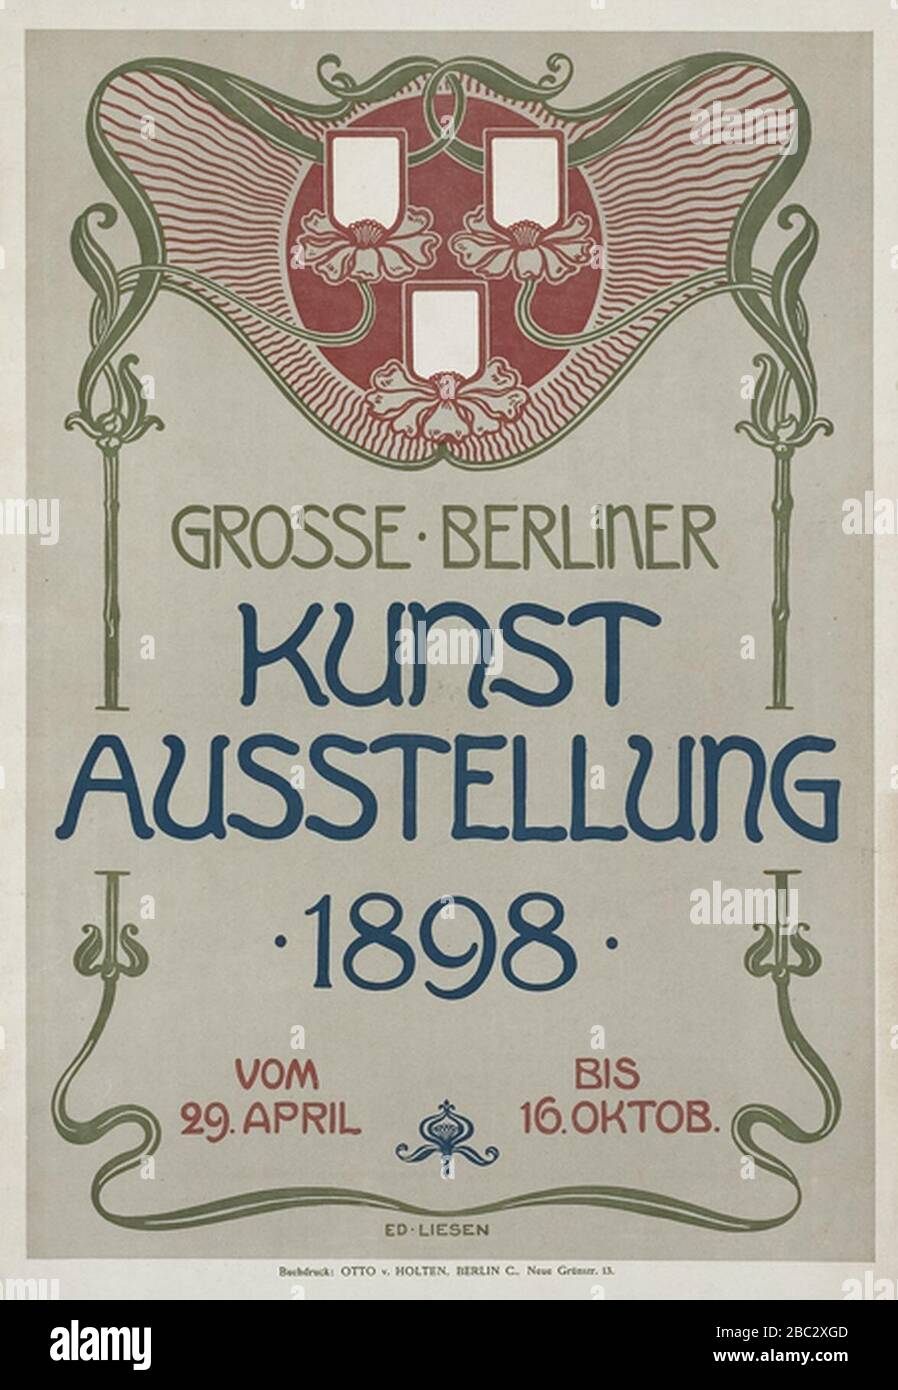 Grosse Berliner Kunstausstellung 1898 von Eduard Liesen. Stock Photo